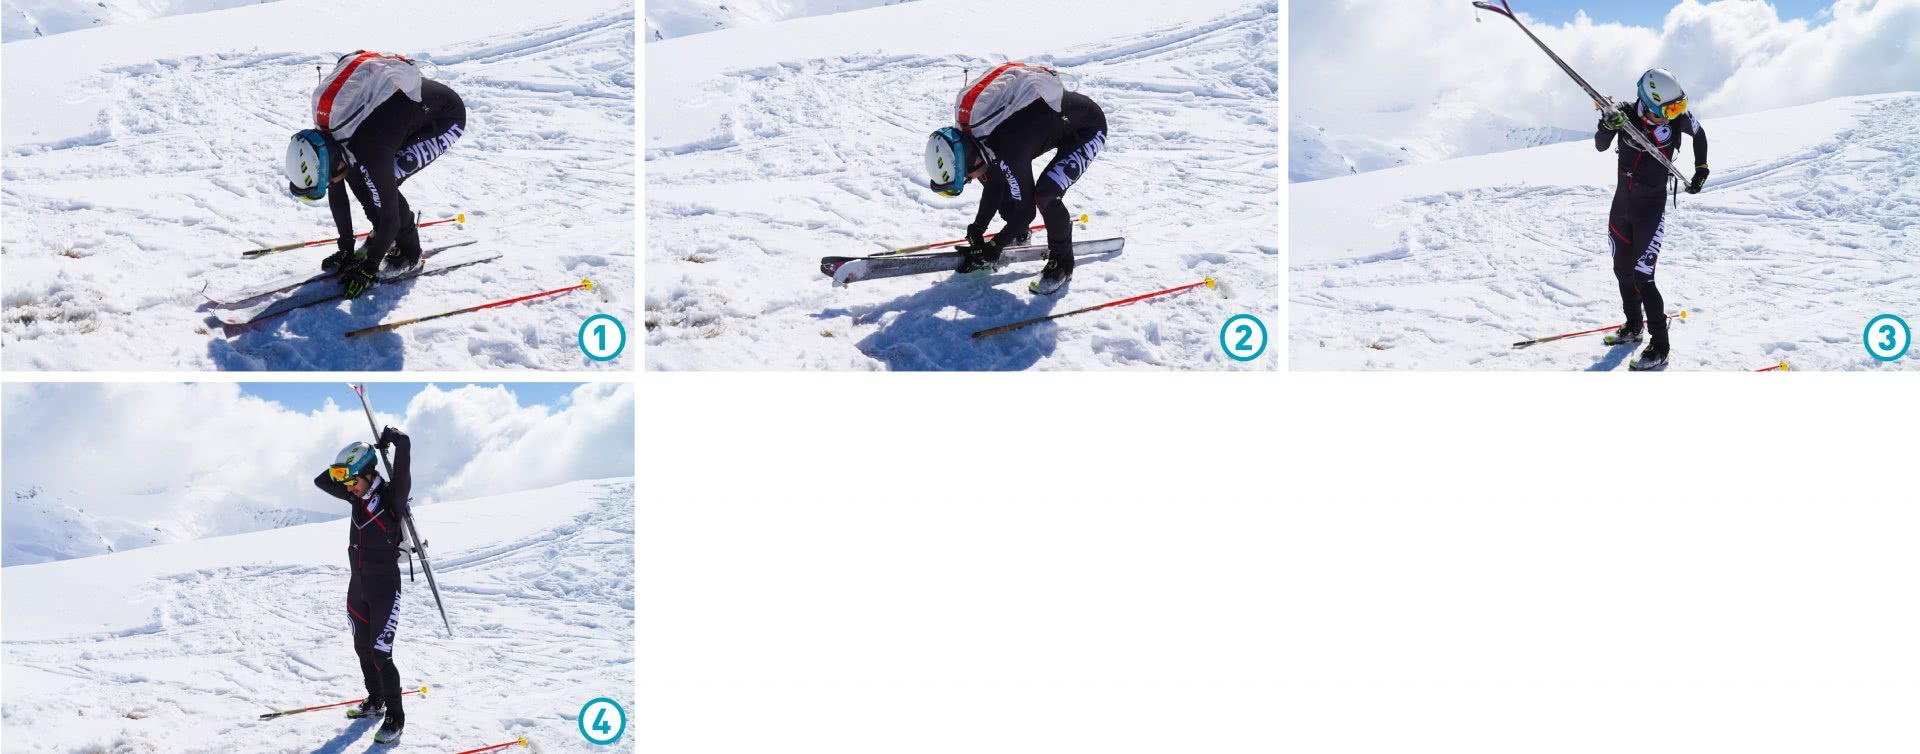 Serienbild: Aufbinden der Skis